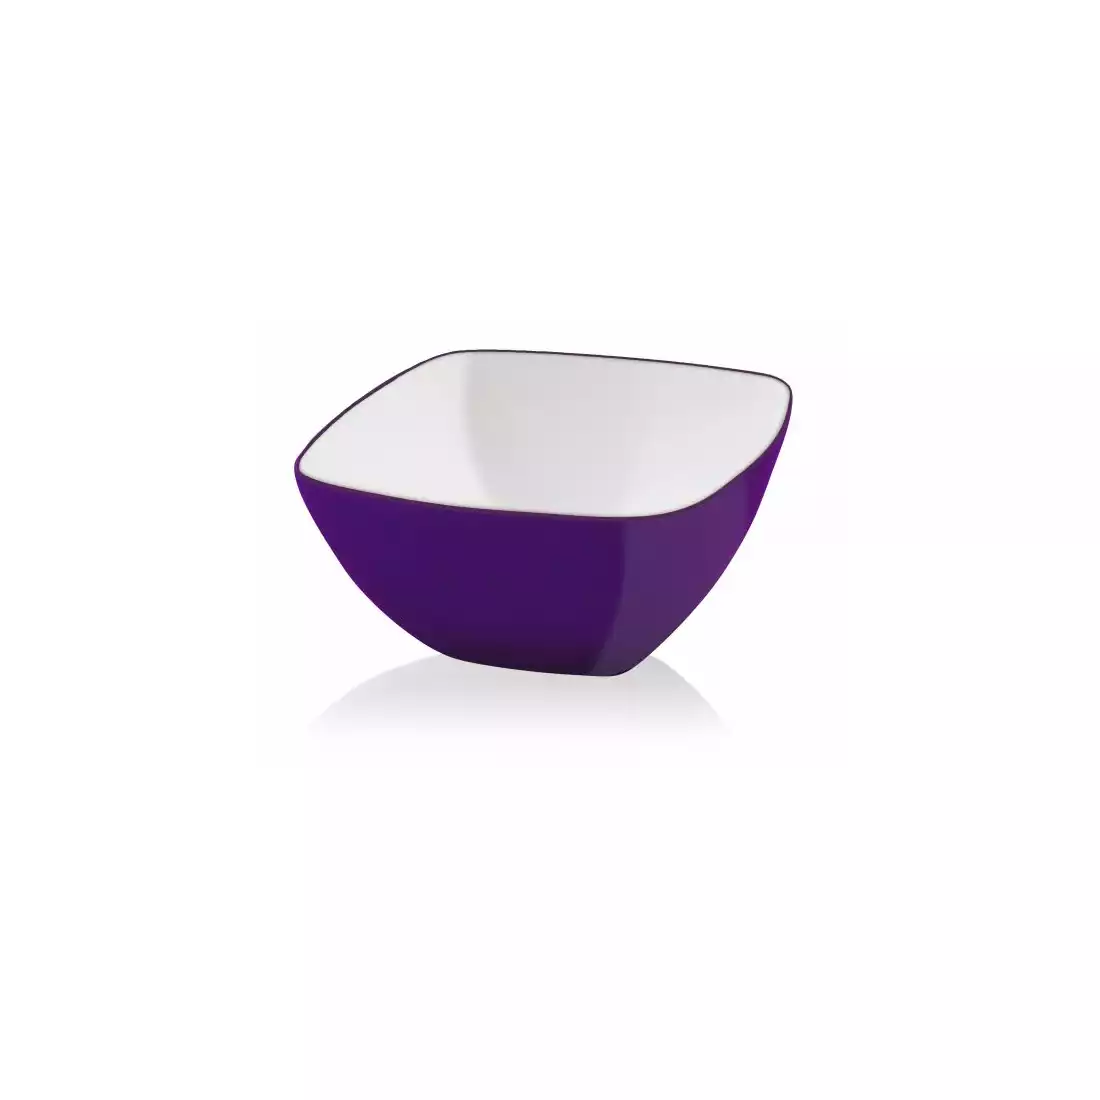 VALLI DESIGN LIVIO acrylschale quadratisch, violett